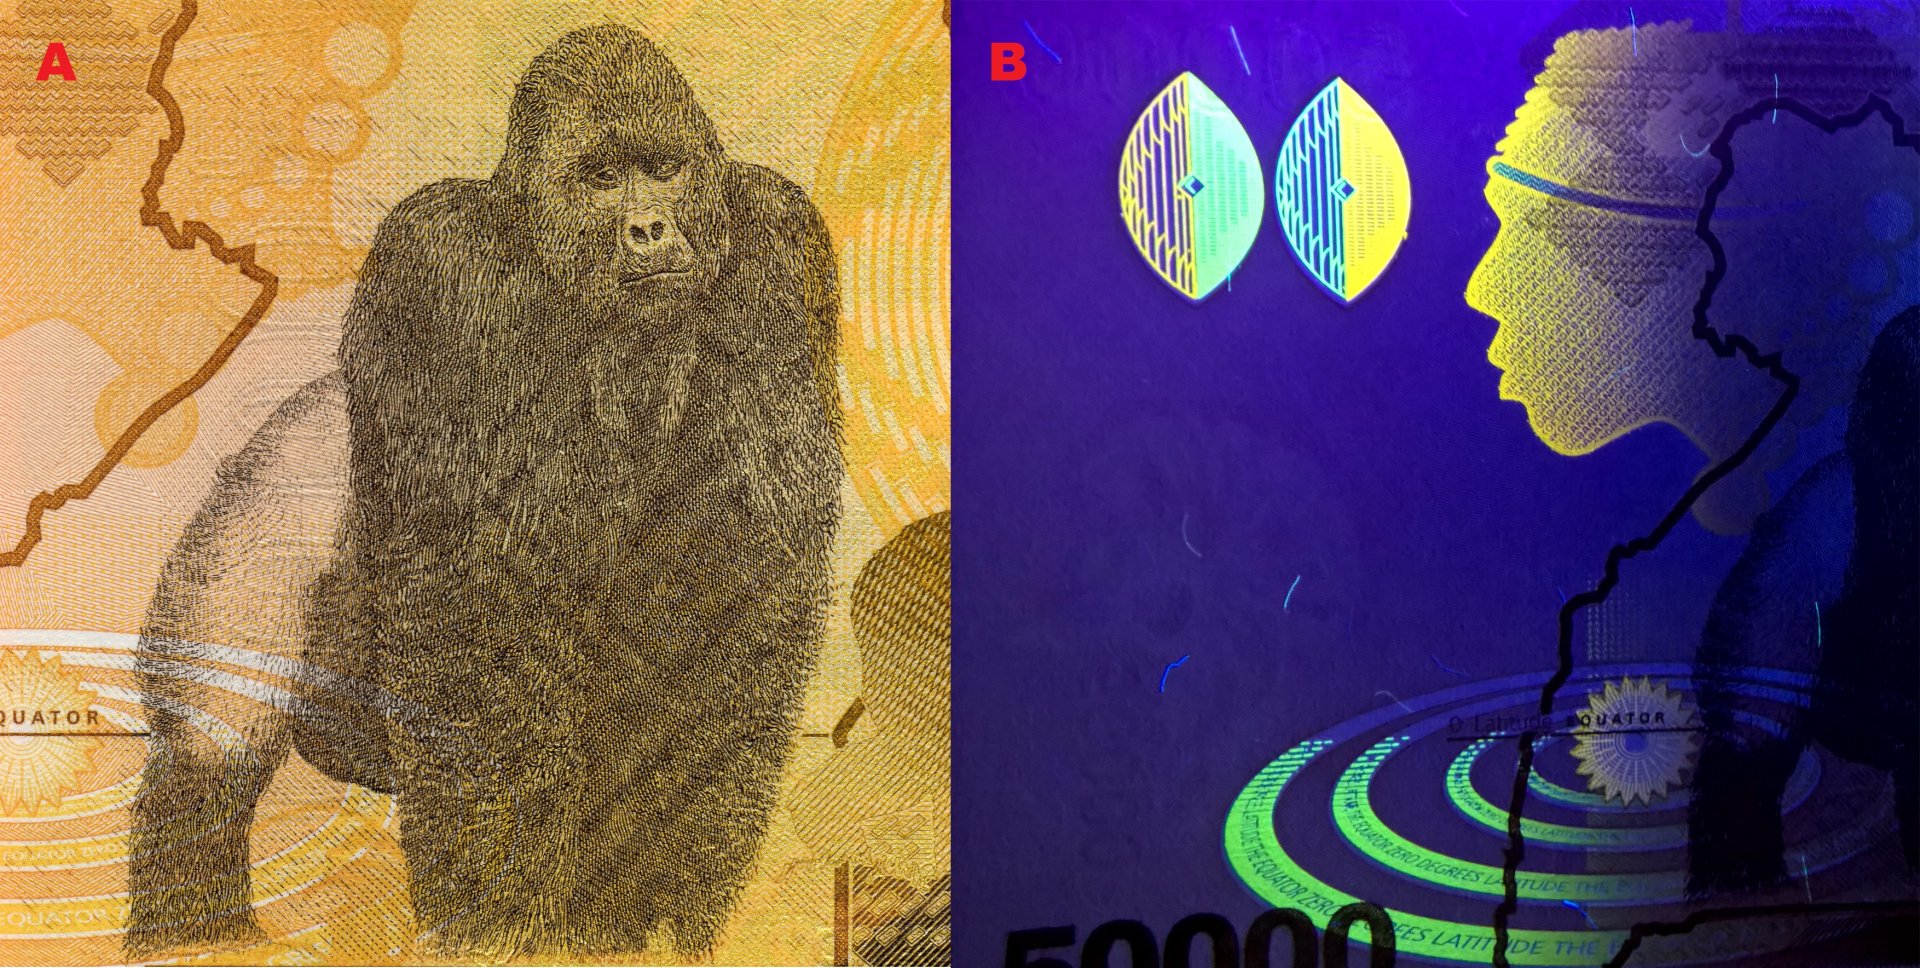 Obrázek 7. A) Samec gorily horské (Gorilla beringei beringei). B) UV pozitivní pole reverzu